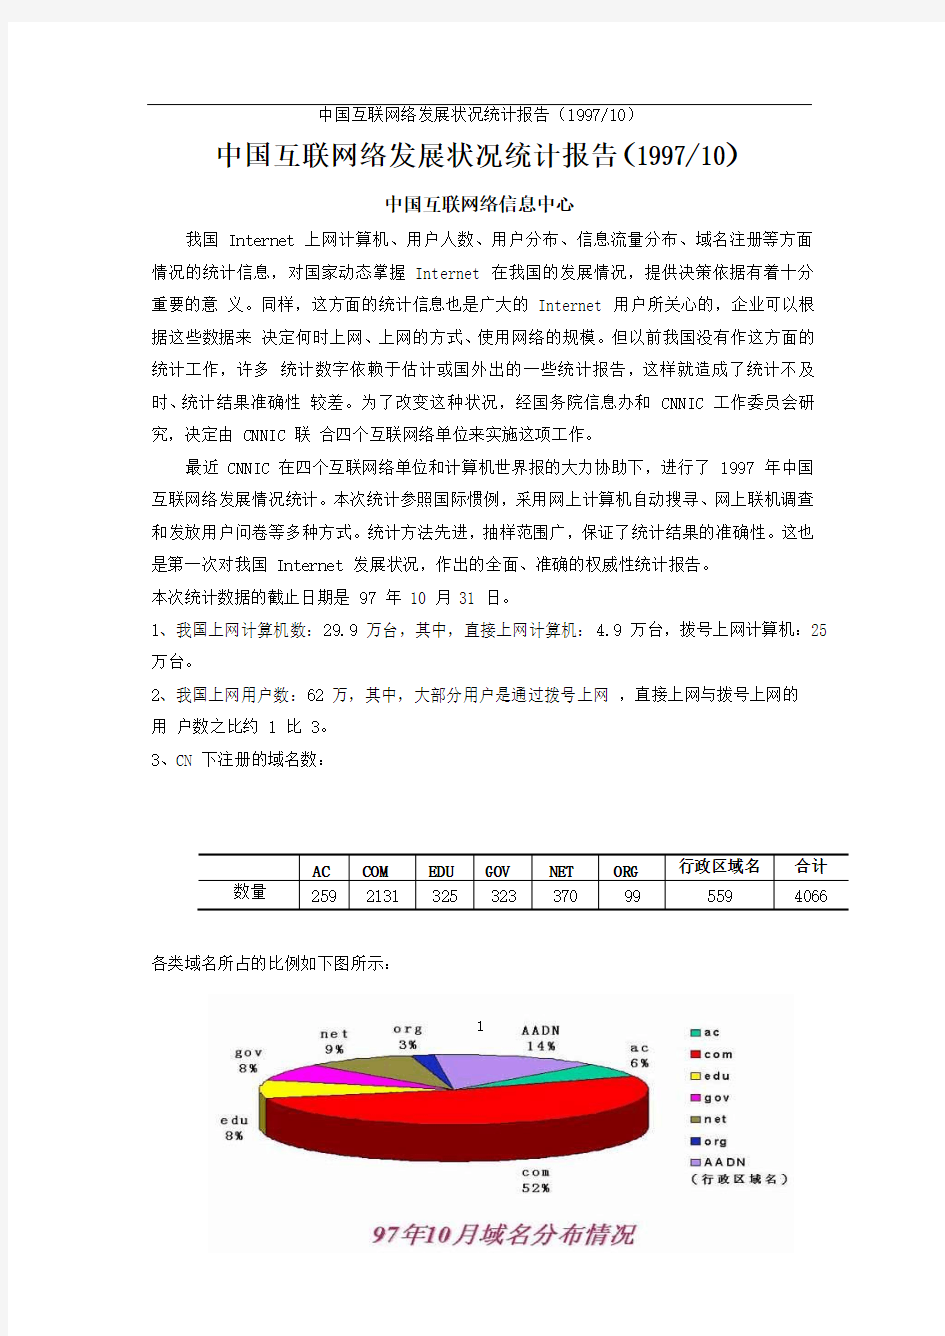 1997第1次中国互联网络发展状况调查统计报告